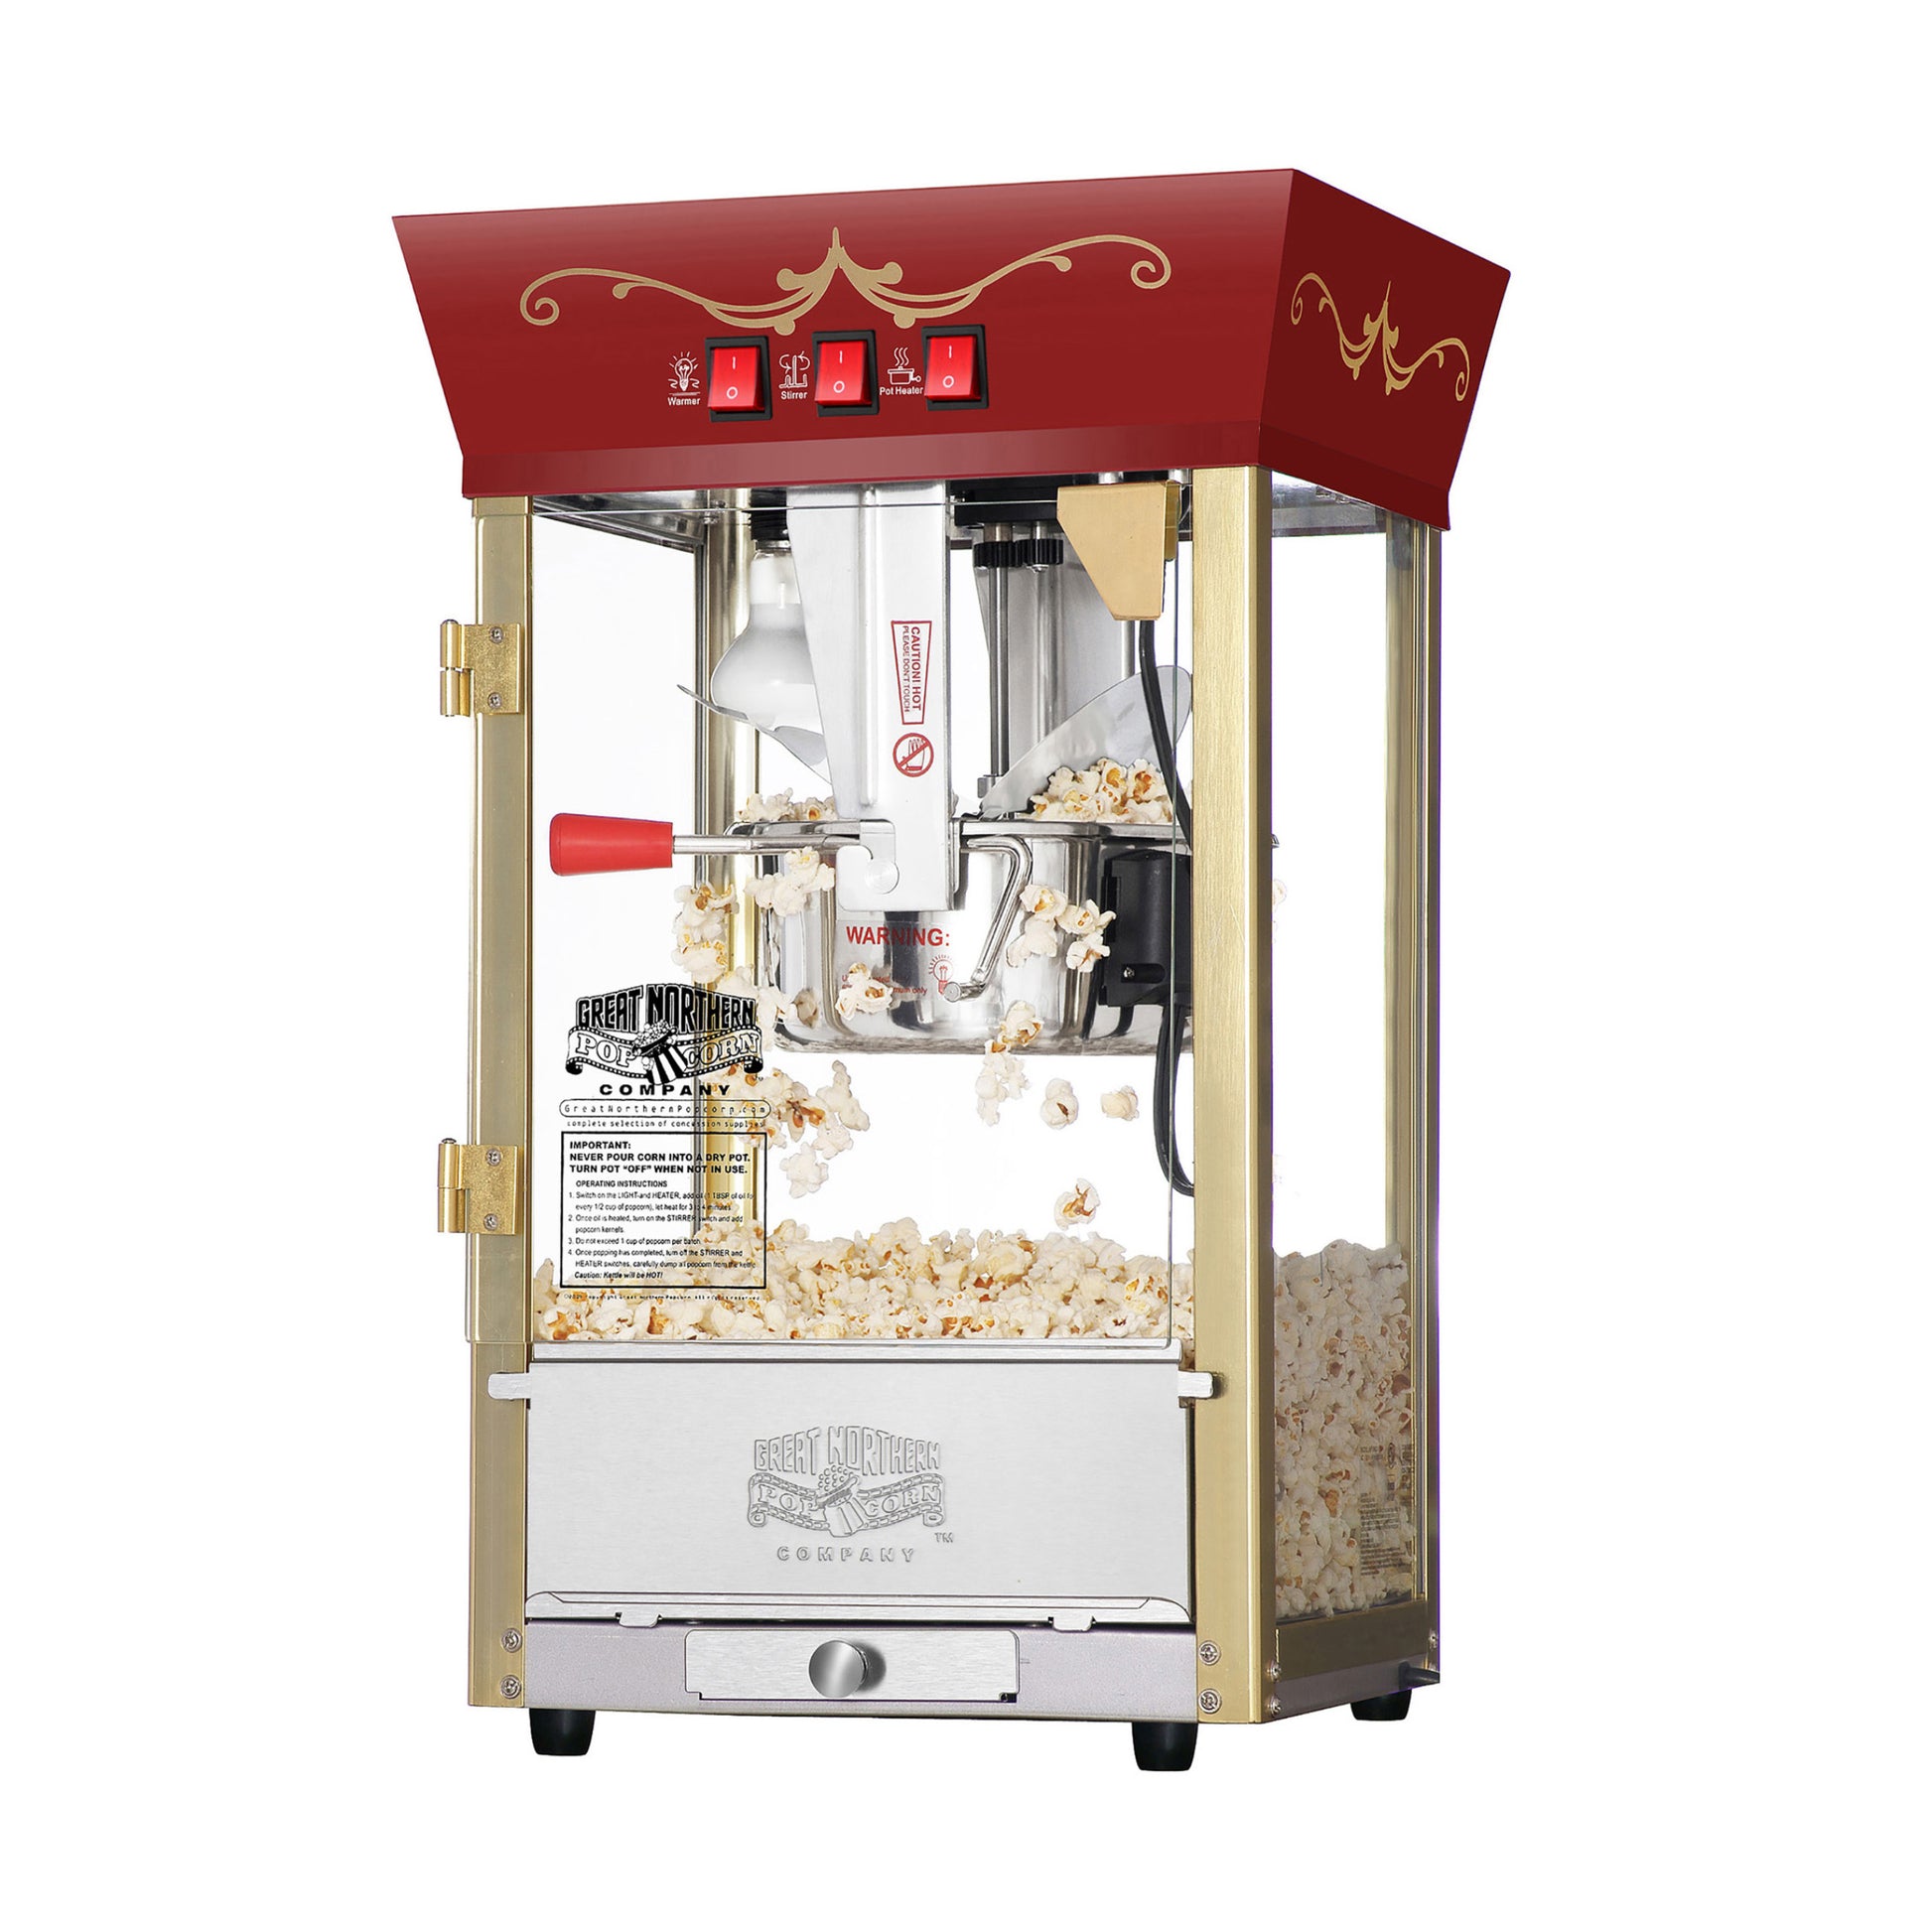 5 Core POP-850 Popcorn Popper Air Popper Machine Popcorn Maker Hot Air Pop  Corn Machine POP 850